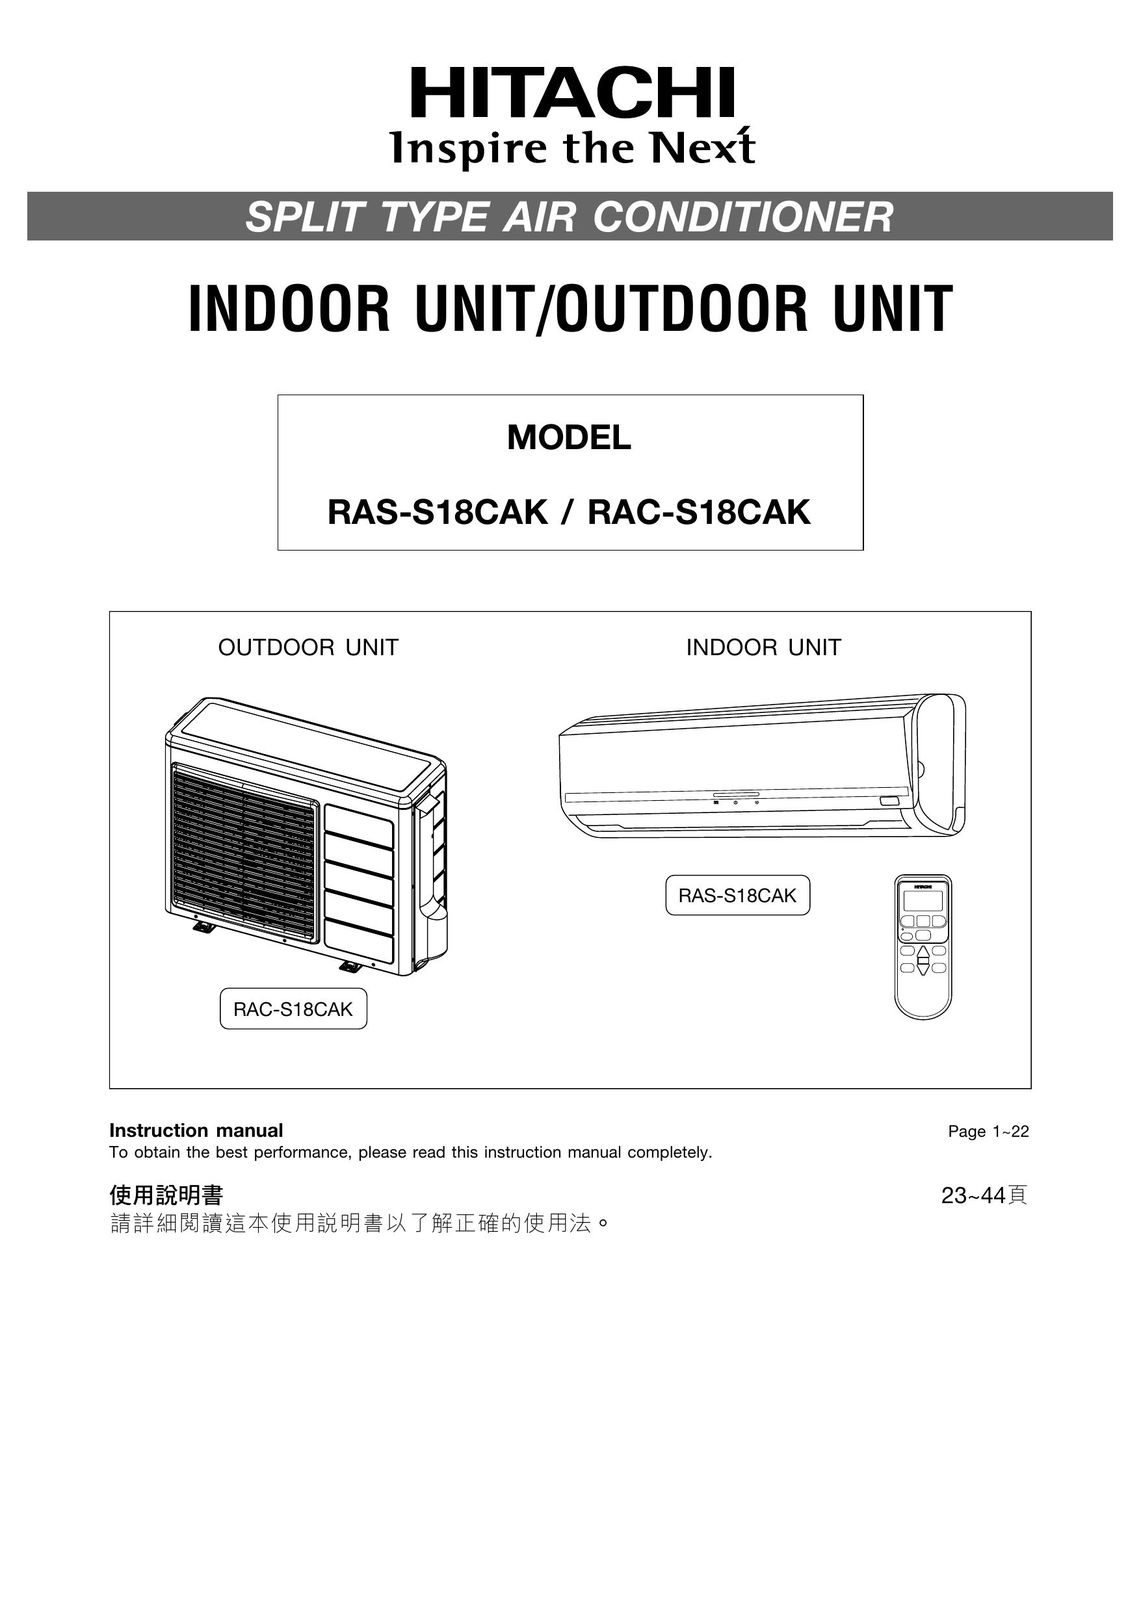 Hitachi RAC-S18CAK Air Conditioner User Manual